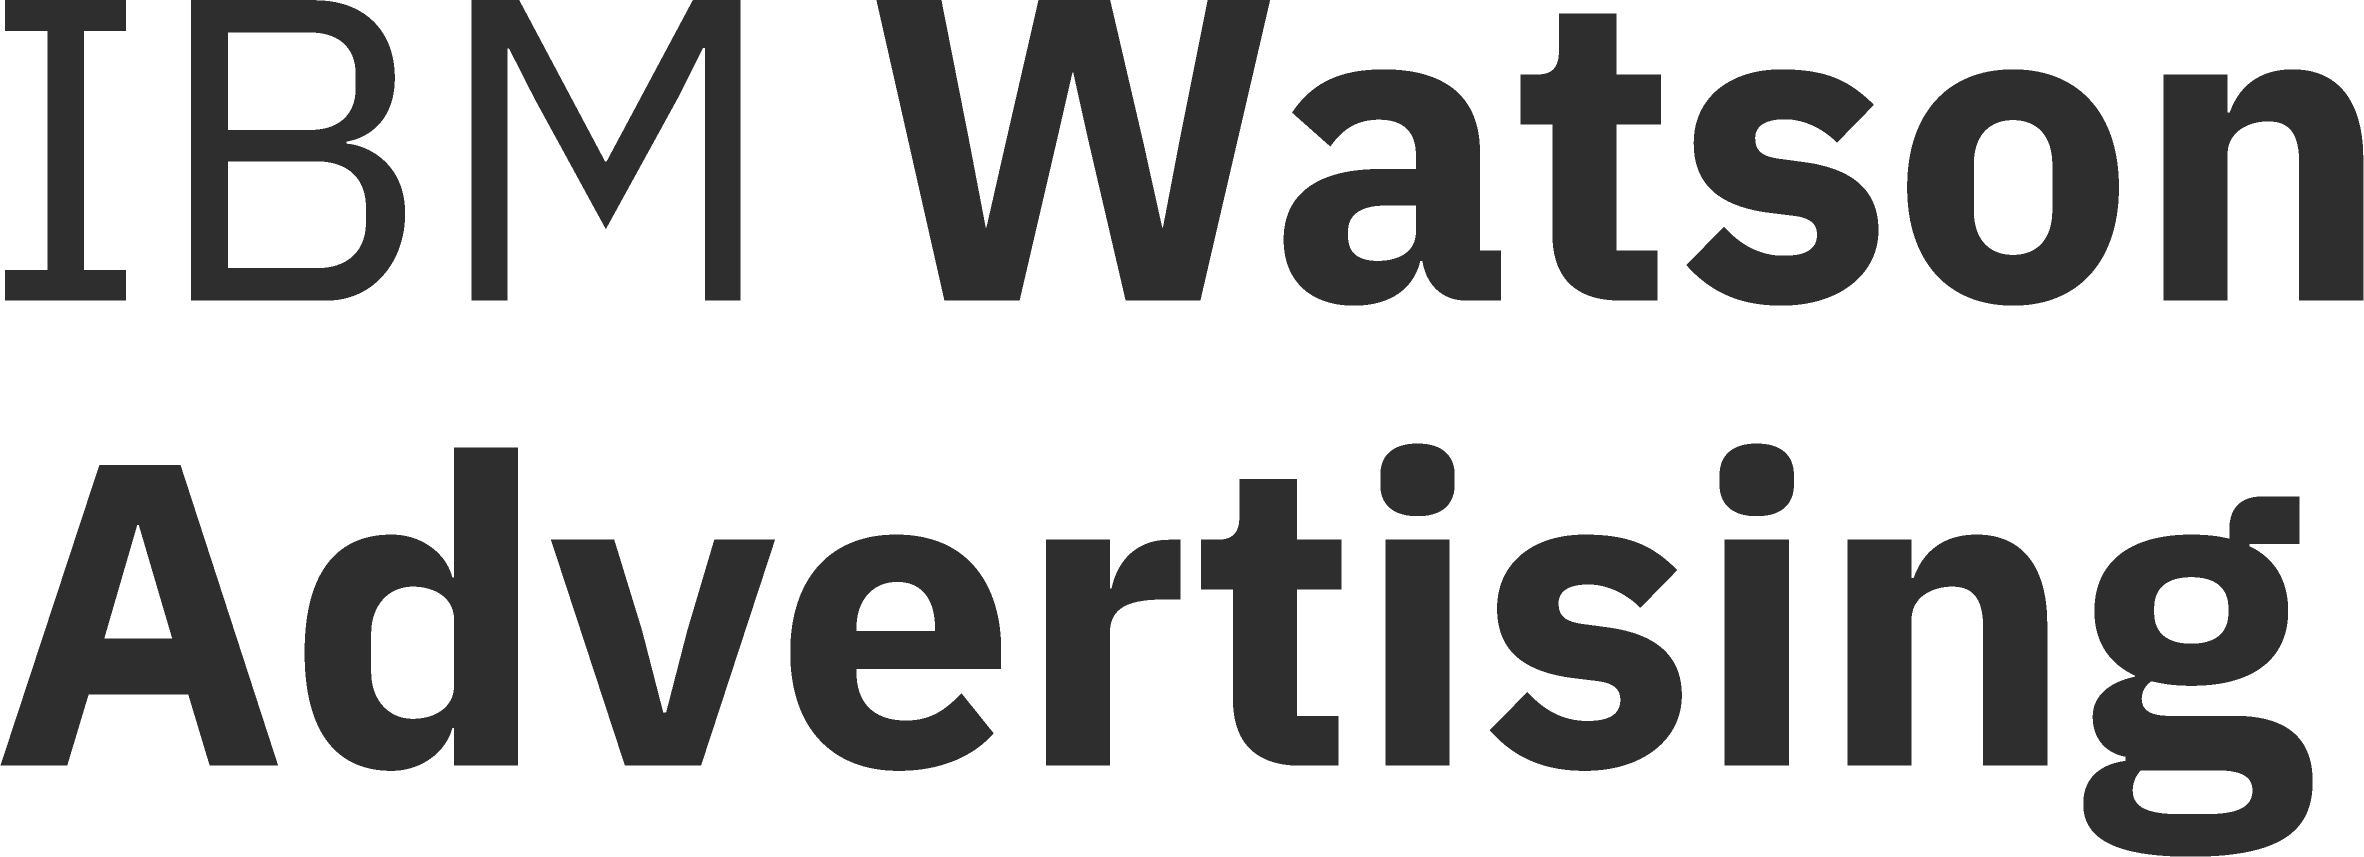 IBM Watson Advertising logo